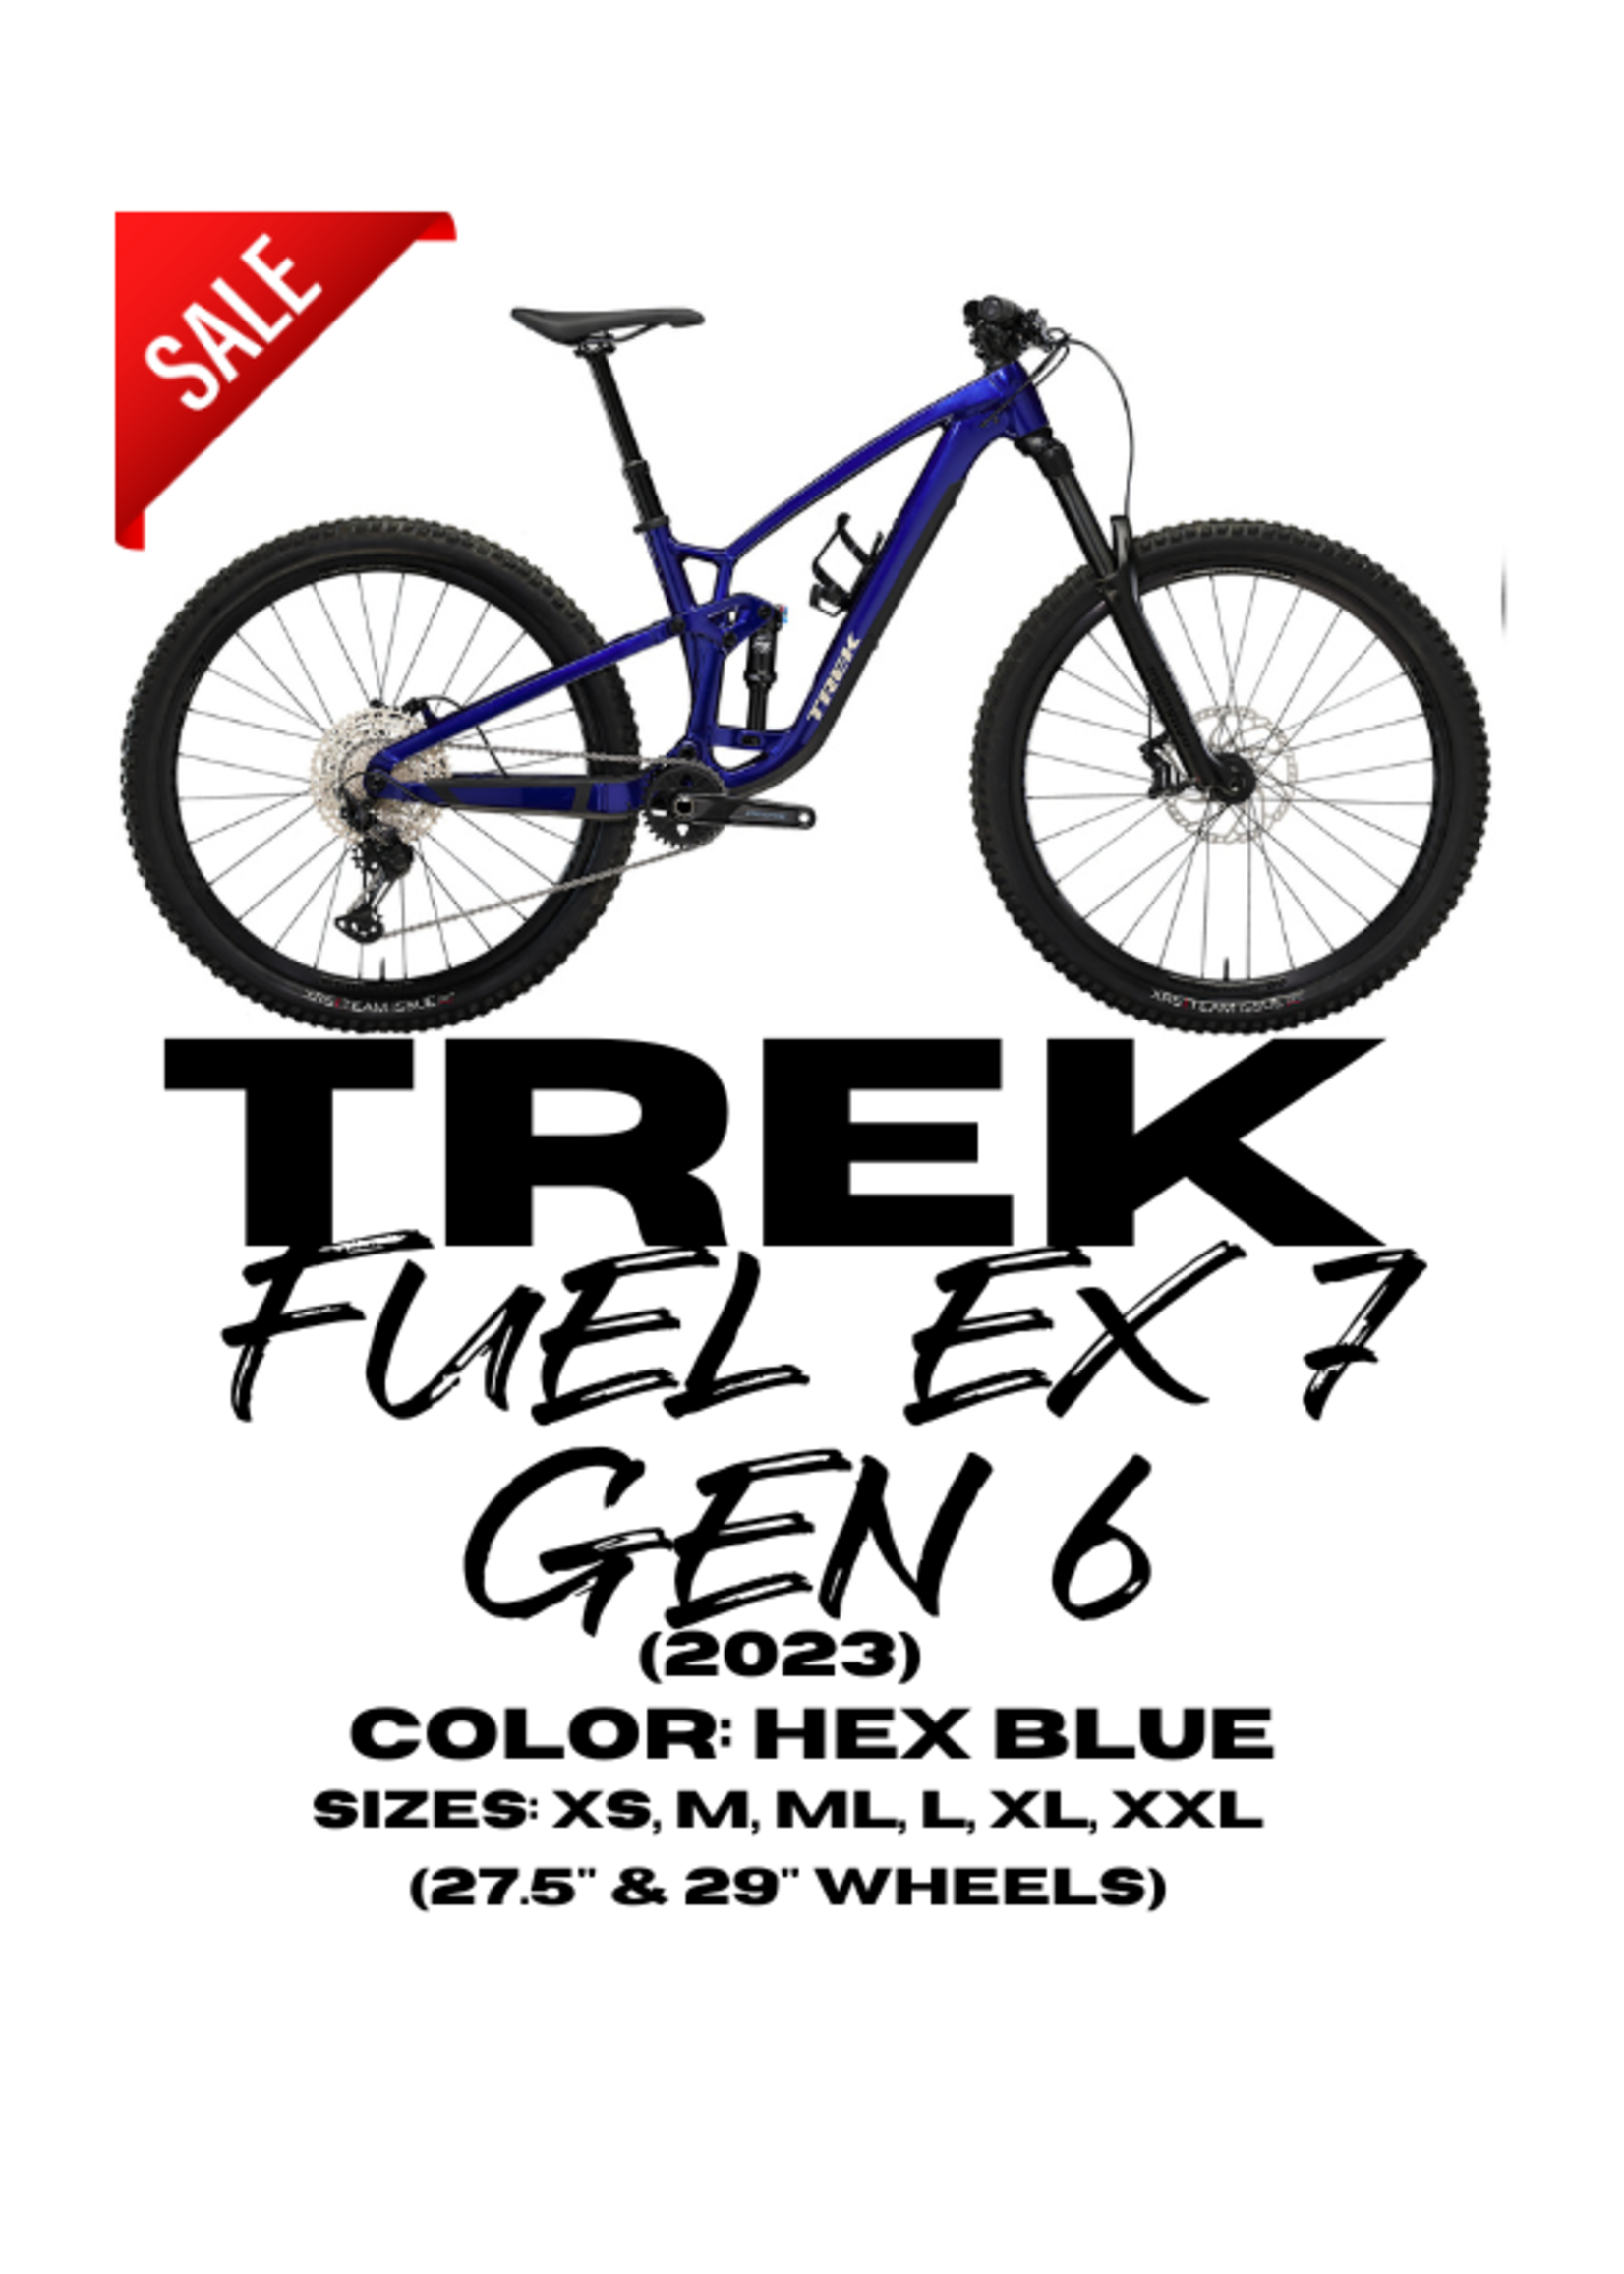 TREK Trek Fuel EX 7 Gen 6 (2023)